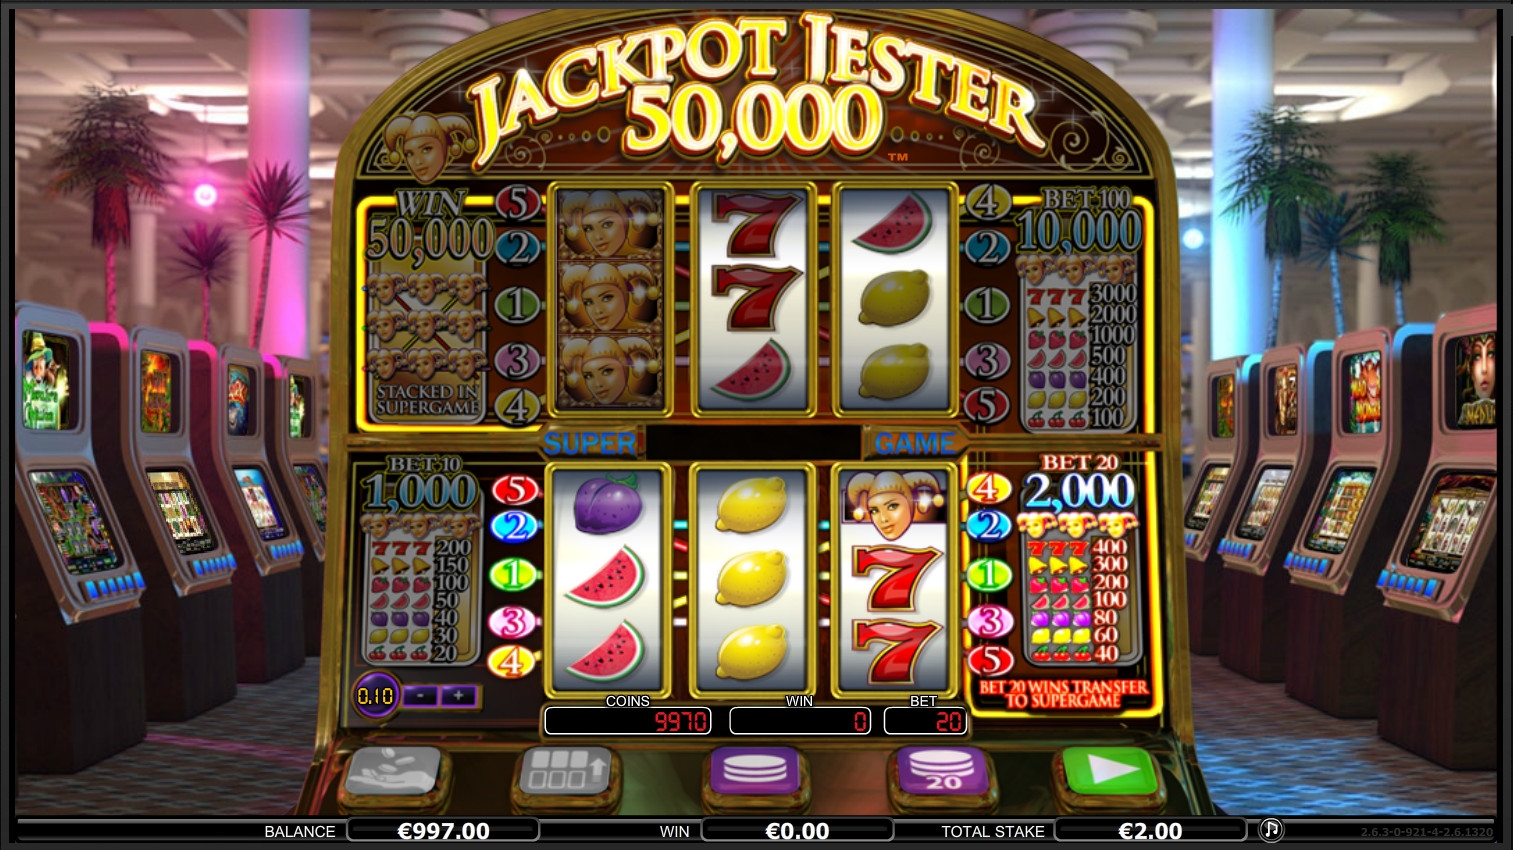 Jackpot Jester 50,000 (Jackpot Jester 50,000) from category Slots